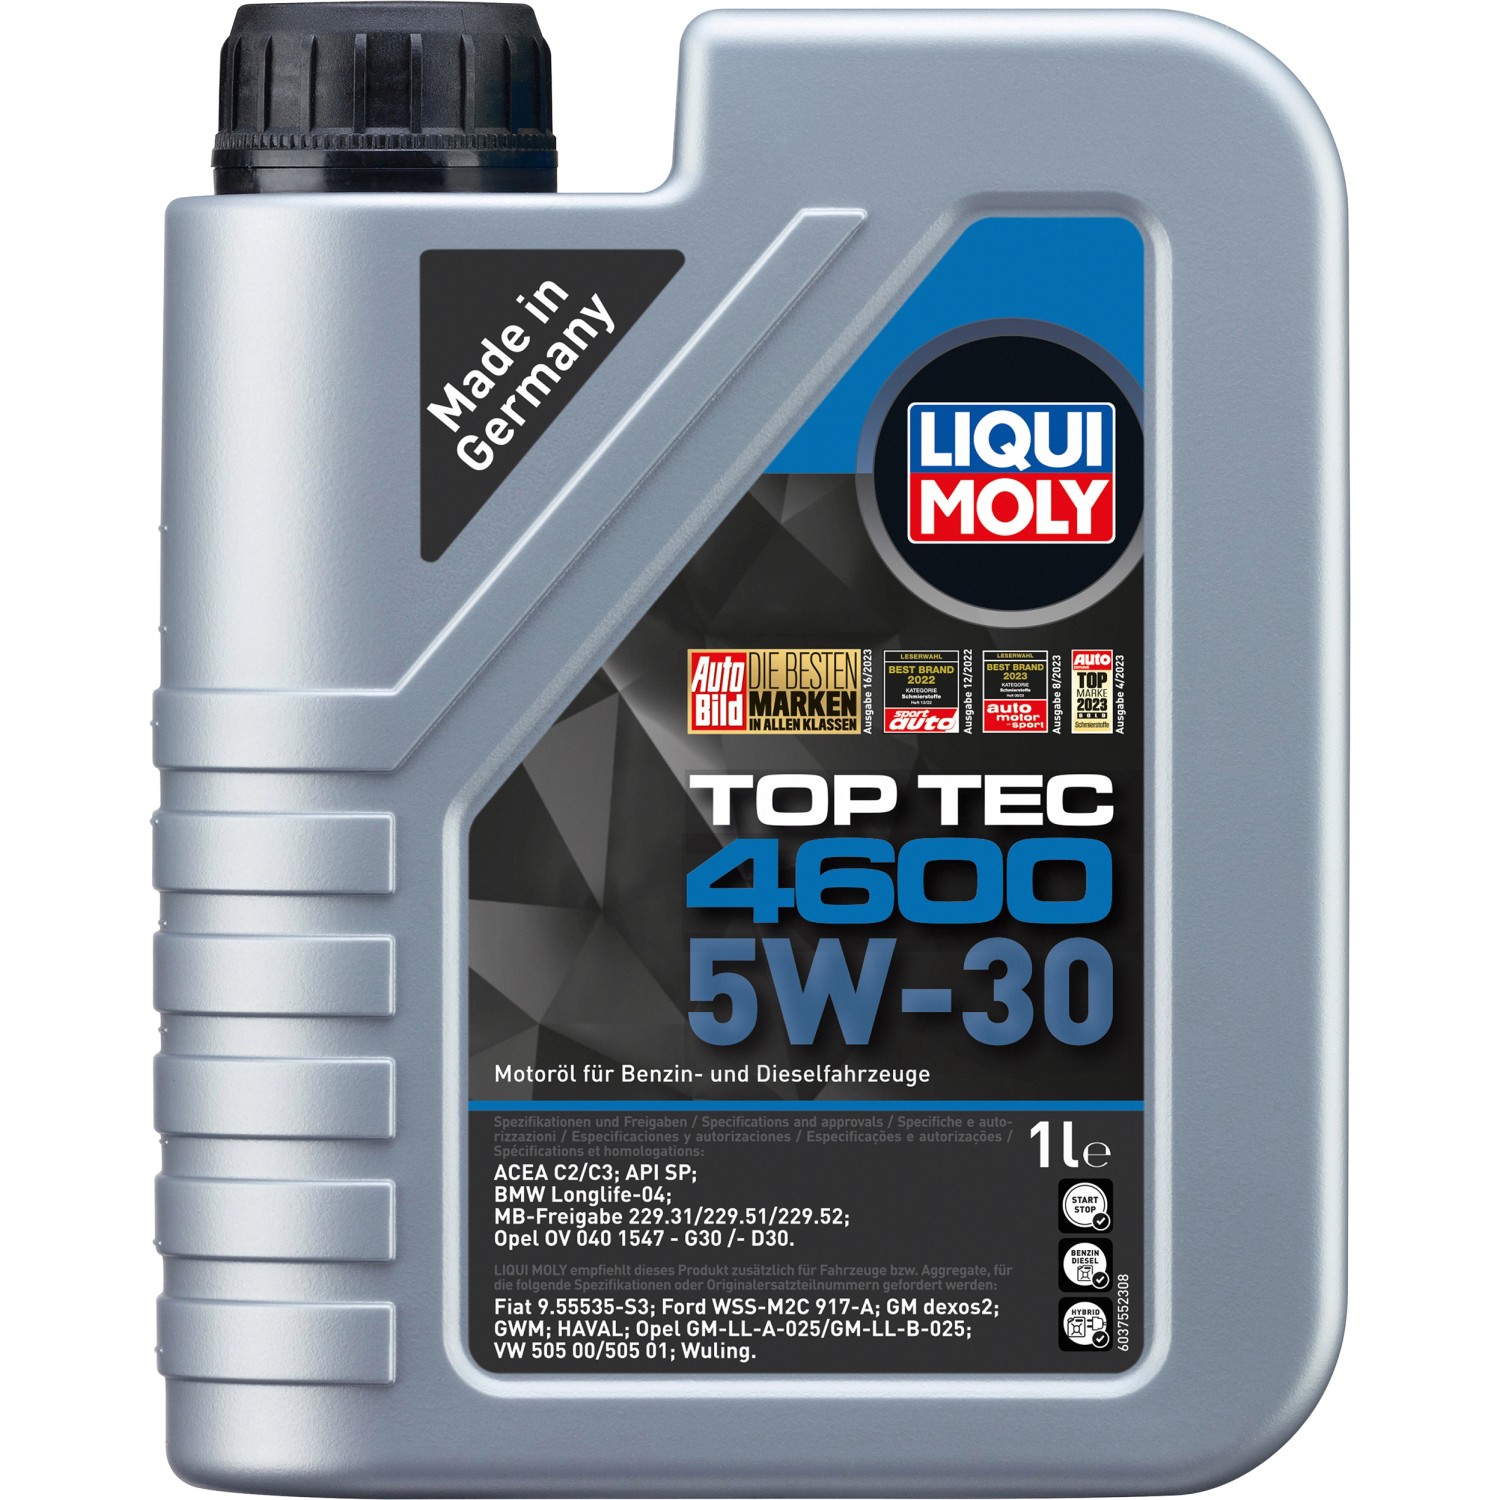 Liqui Moly Top Tec 4600 5W-30 1 l kaufen bei OBI